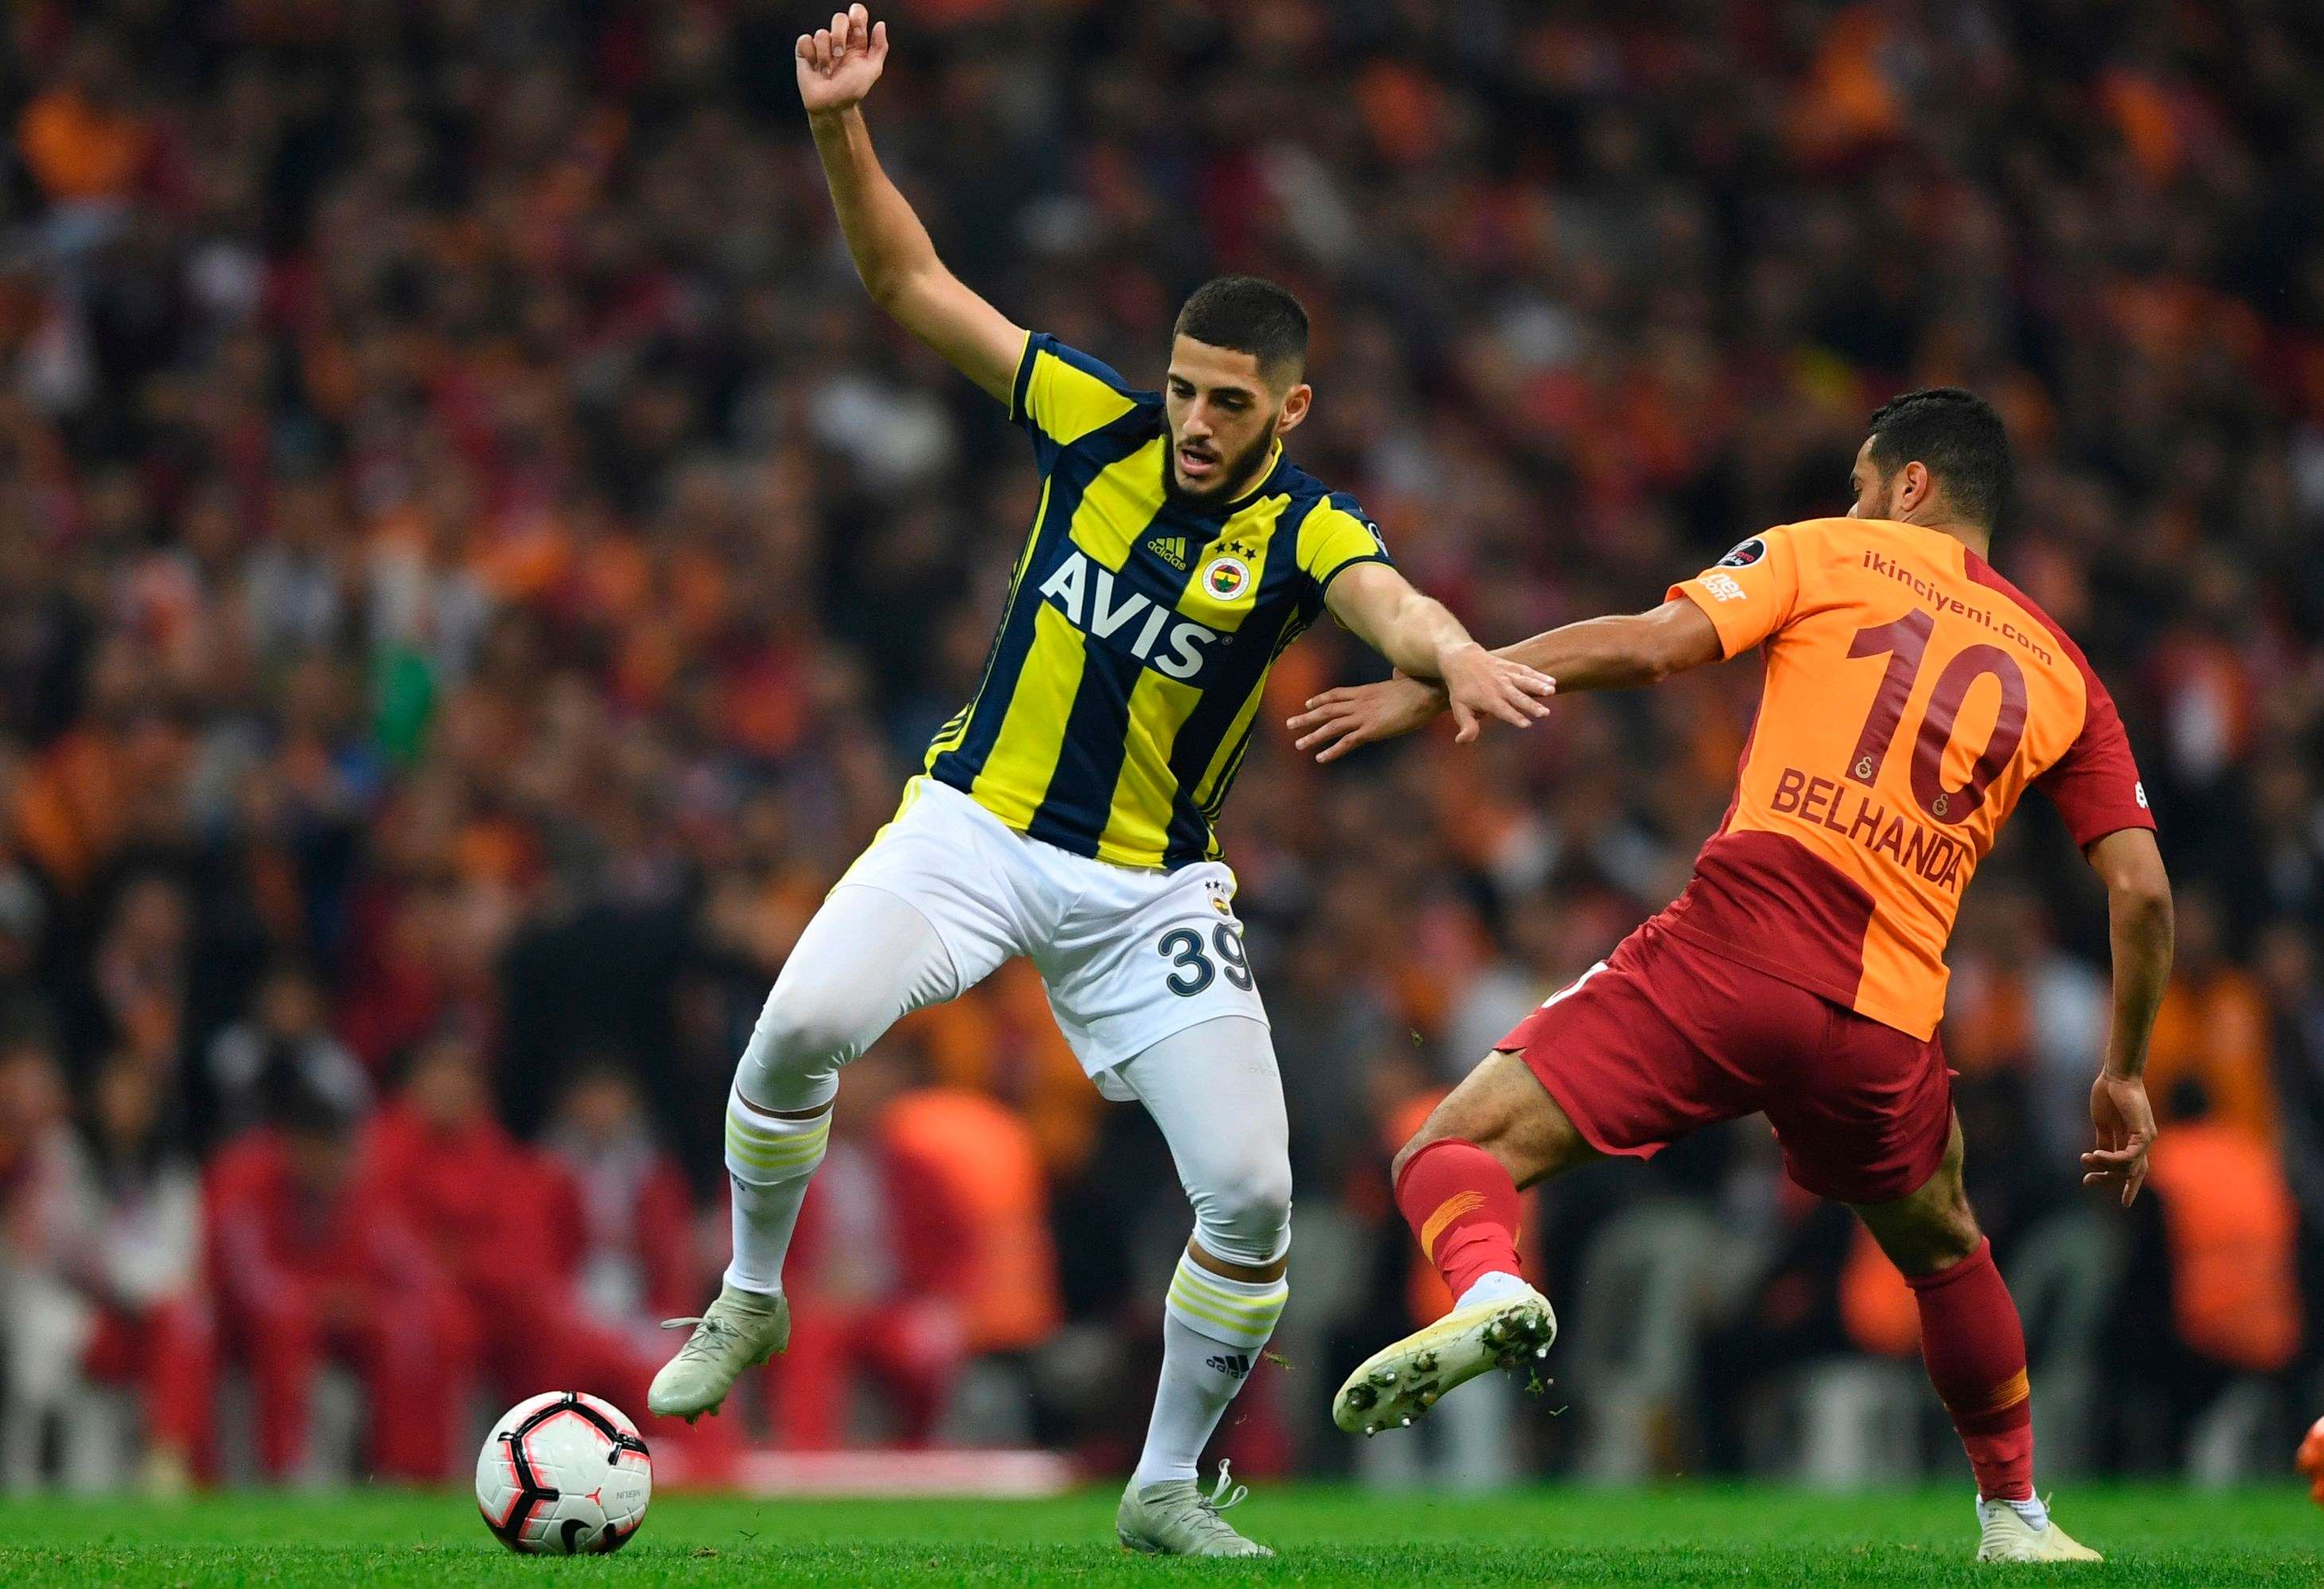 Galatasaray vs Fenerbahce 2-11-18